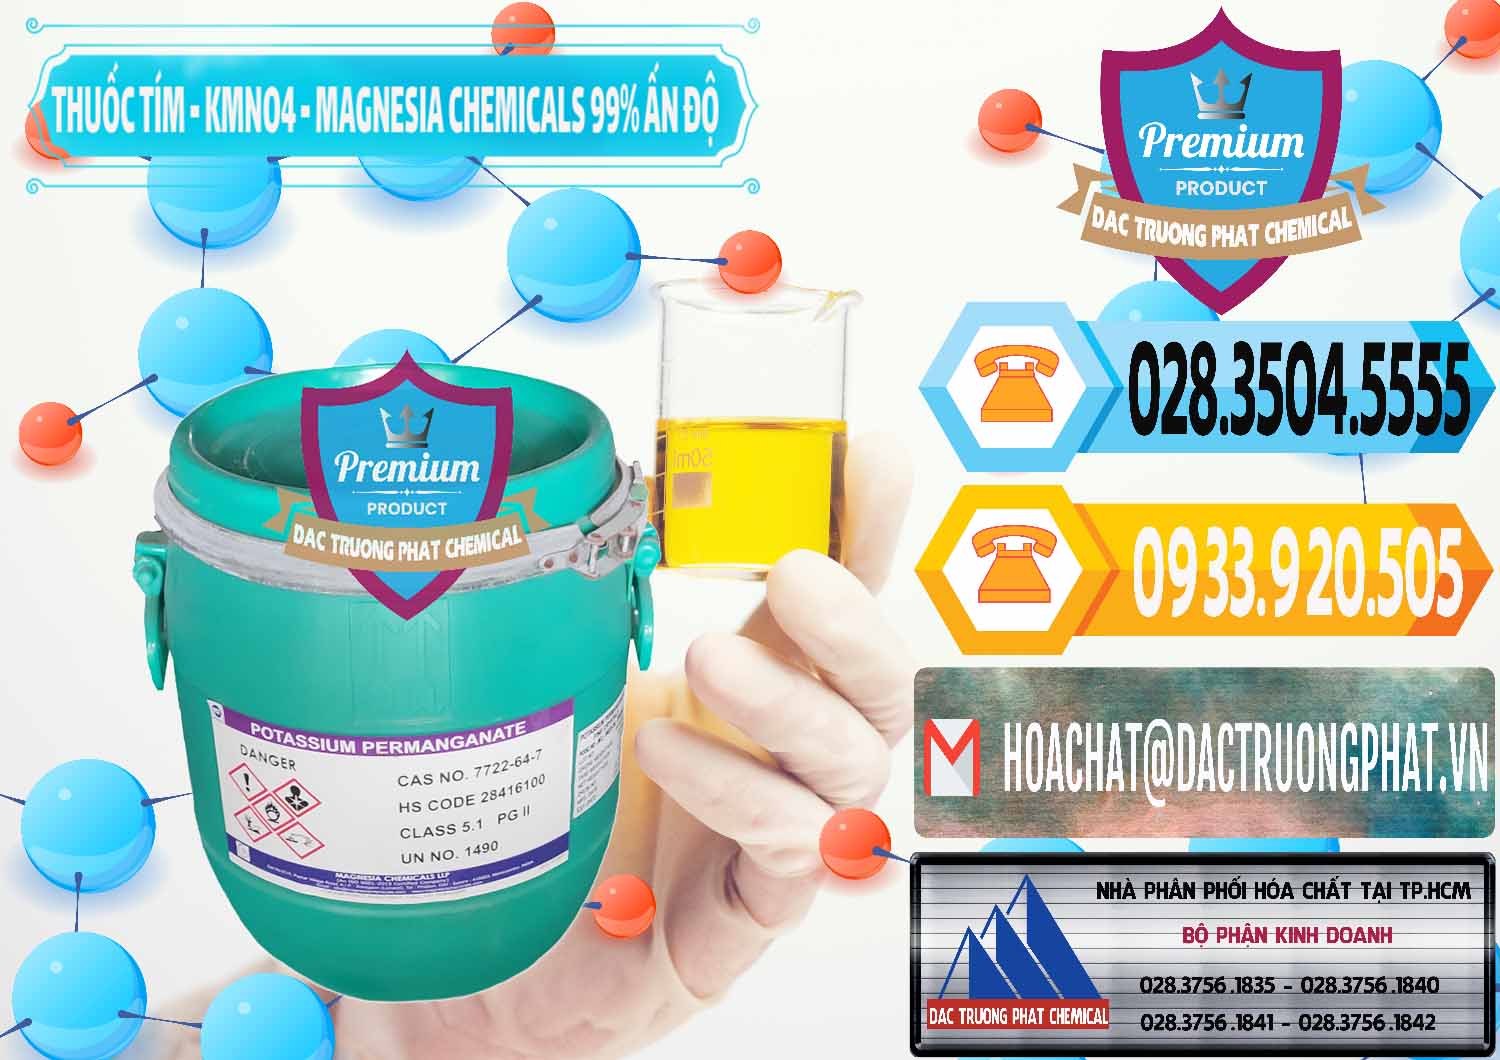 Công ty chuyên bán _ cung cấp Thuốc Tím - KMNO4 Magnesia Chemicals 99% Ấn Độ India - 0251 - Cung cấp _ kinh doanh hóa chất tại TP.HCM - hoachattayrua.net